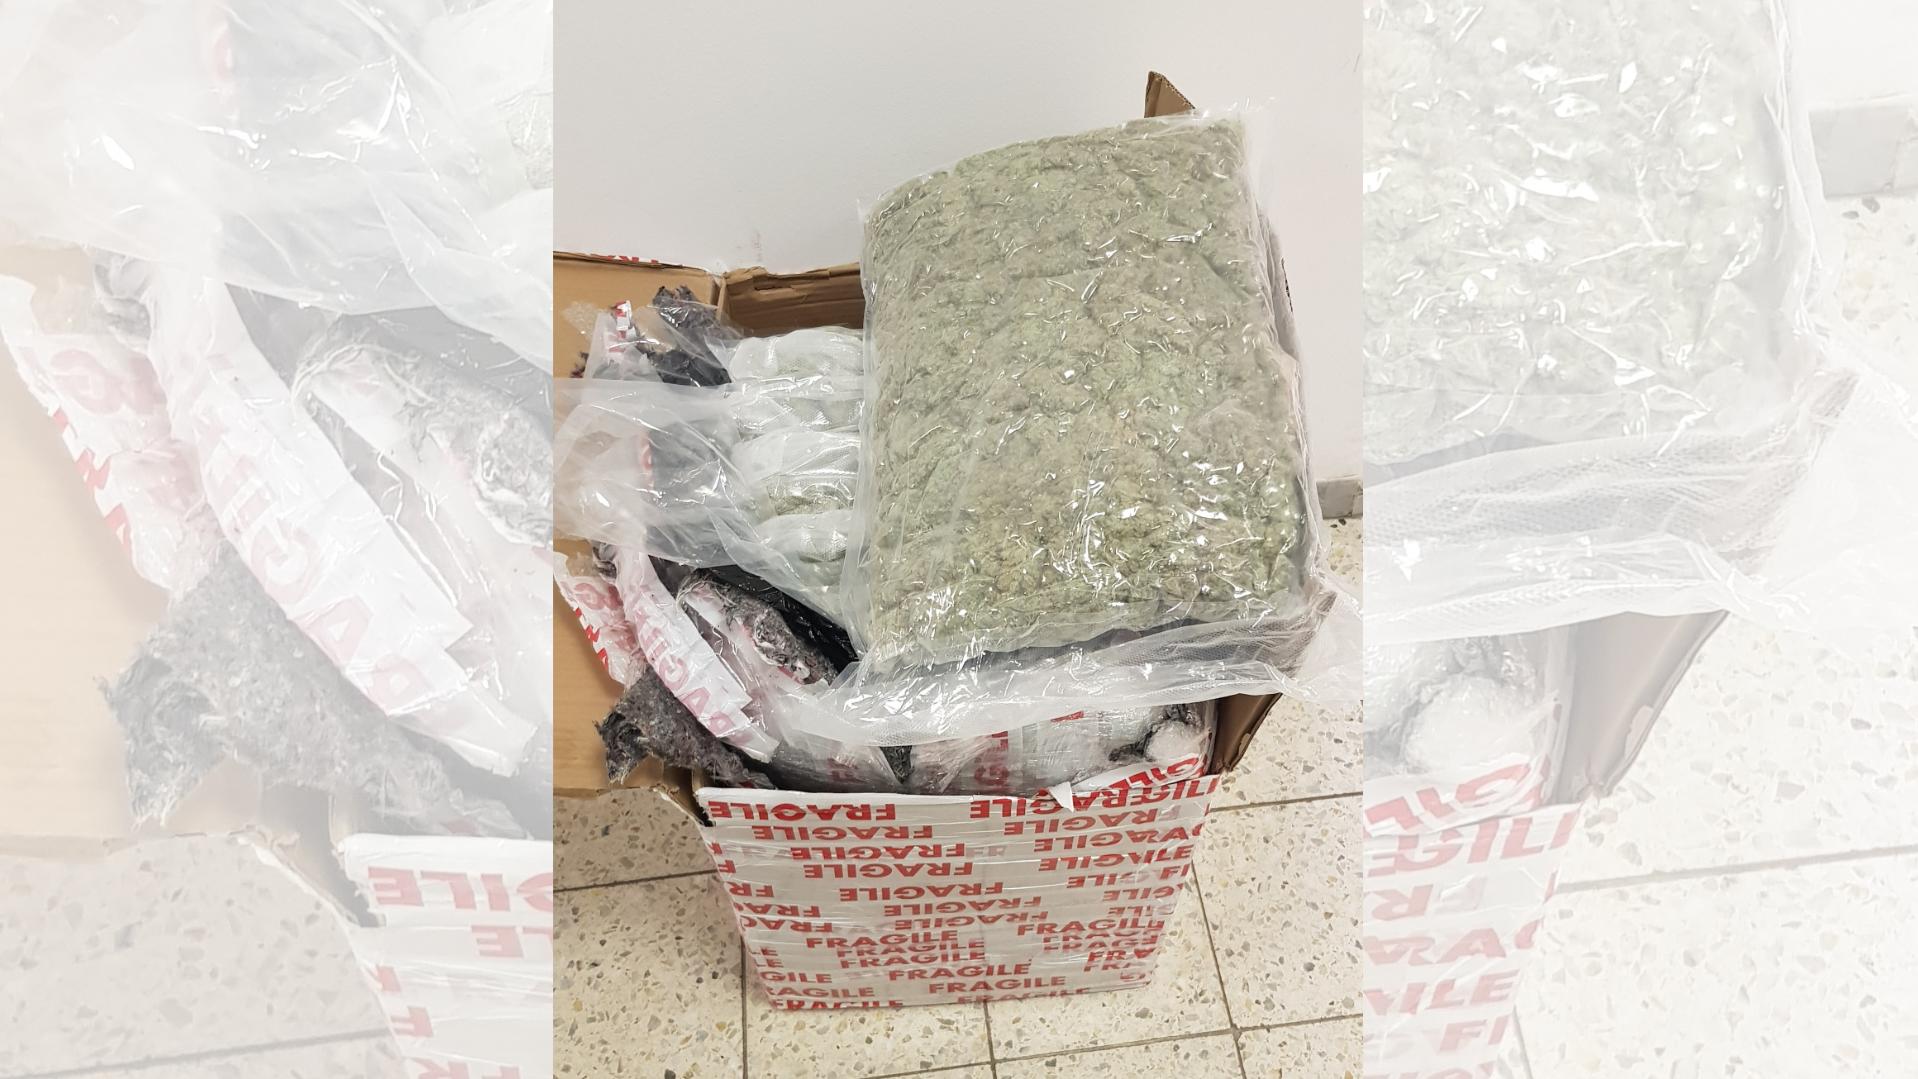 Kiloweise Marihuana wurde in einem Paket aus Spanien gefunden